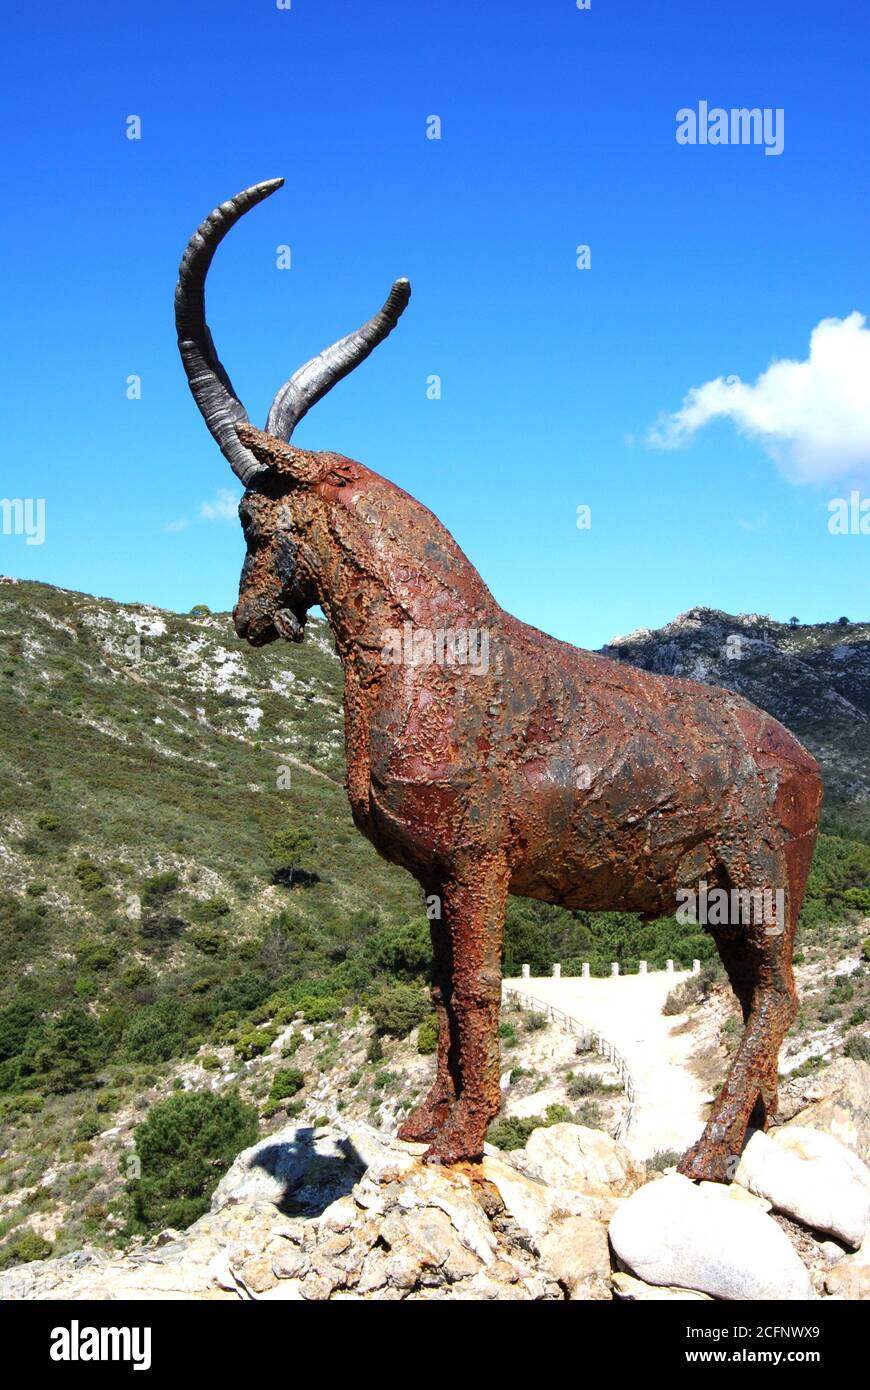 Statua di capra sulla cima di una montagna, Refugio de Juanar, vicino a Marbella, Costa del Sol, provincia di Malaga, Andalusia, l'Europa. Foto Stock